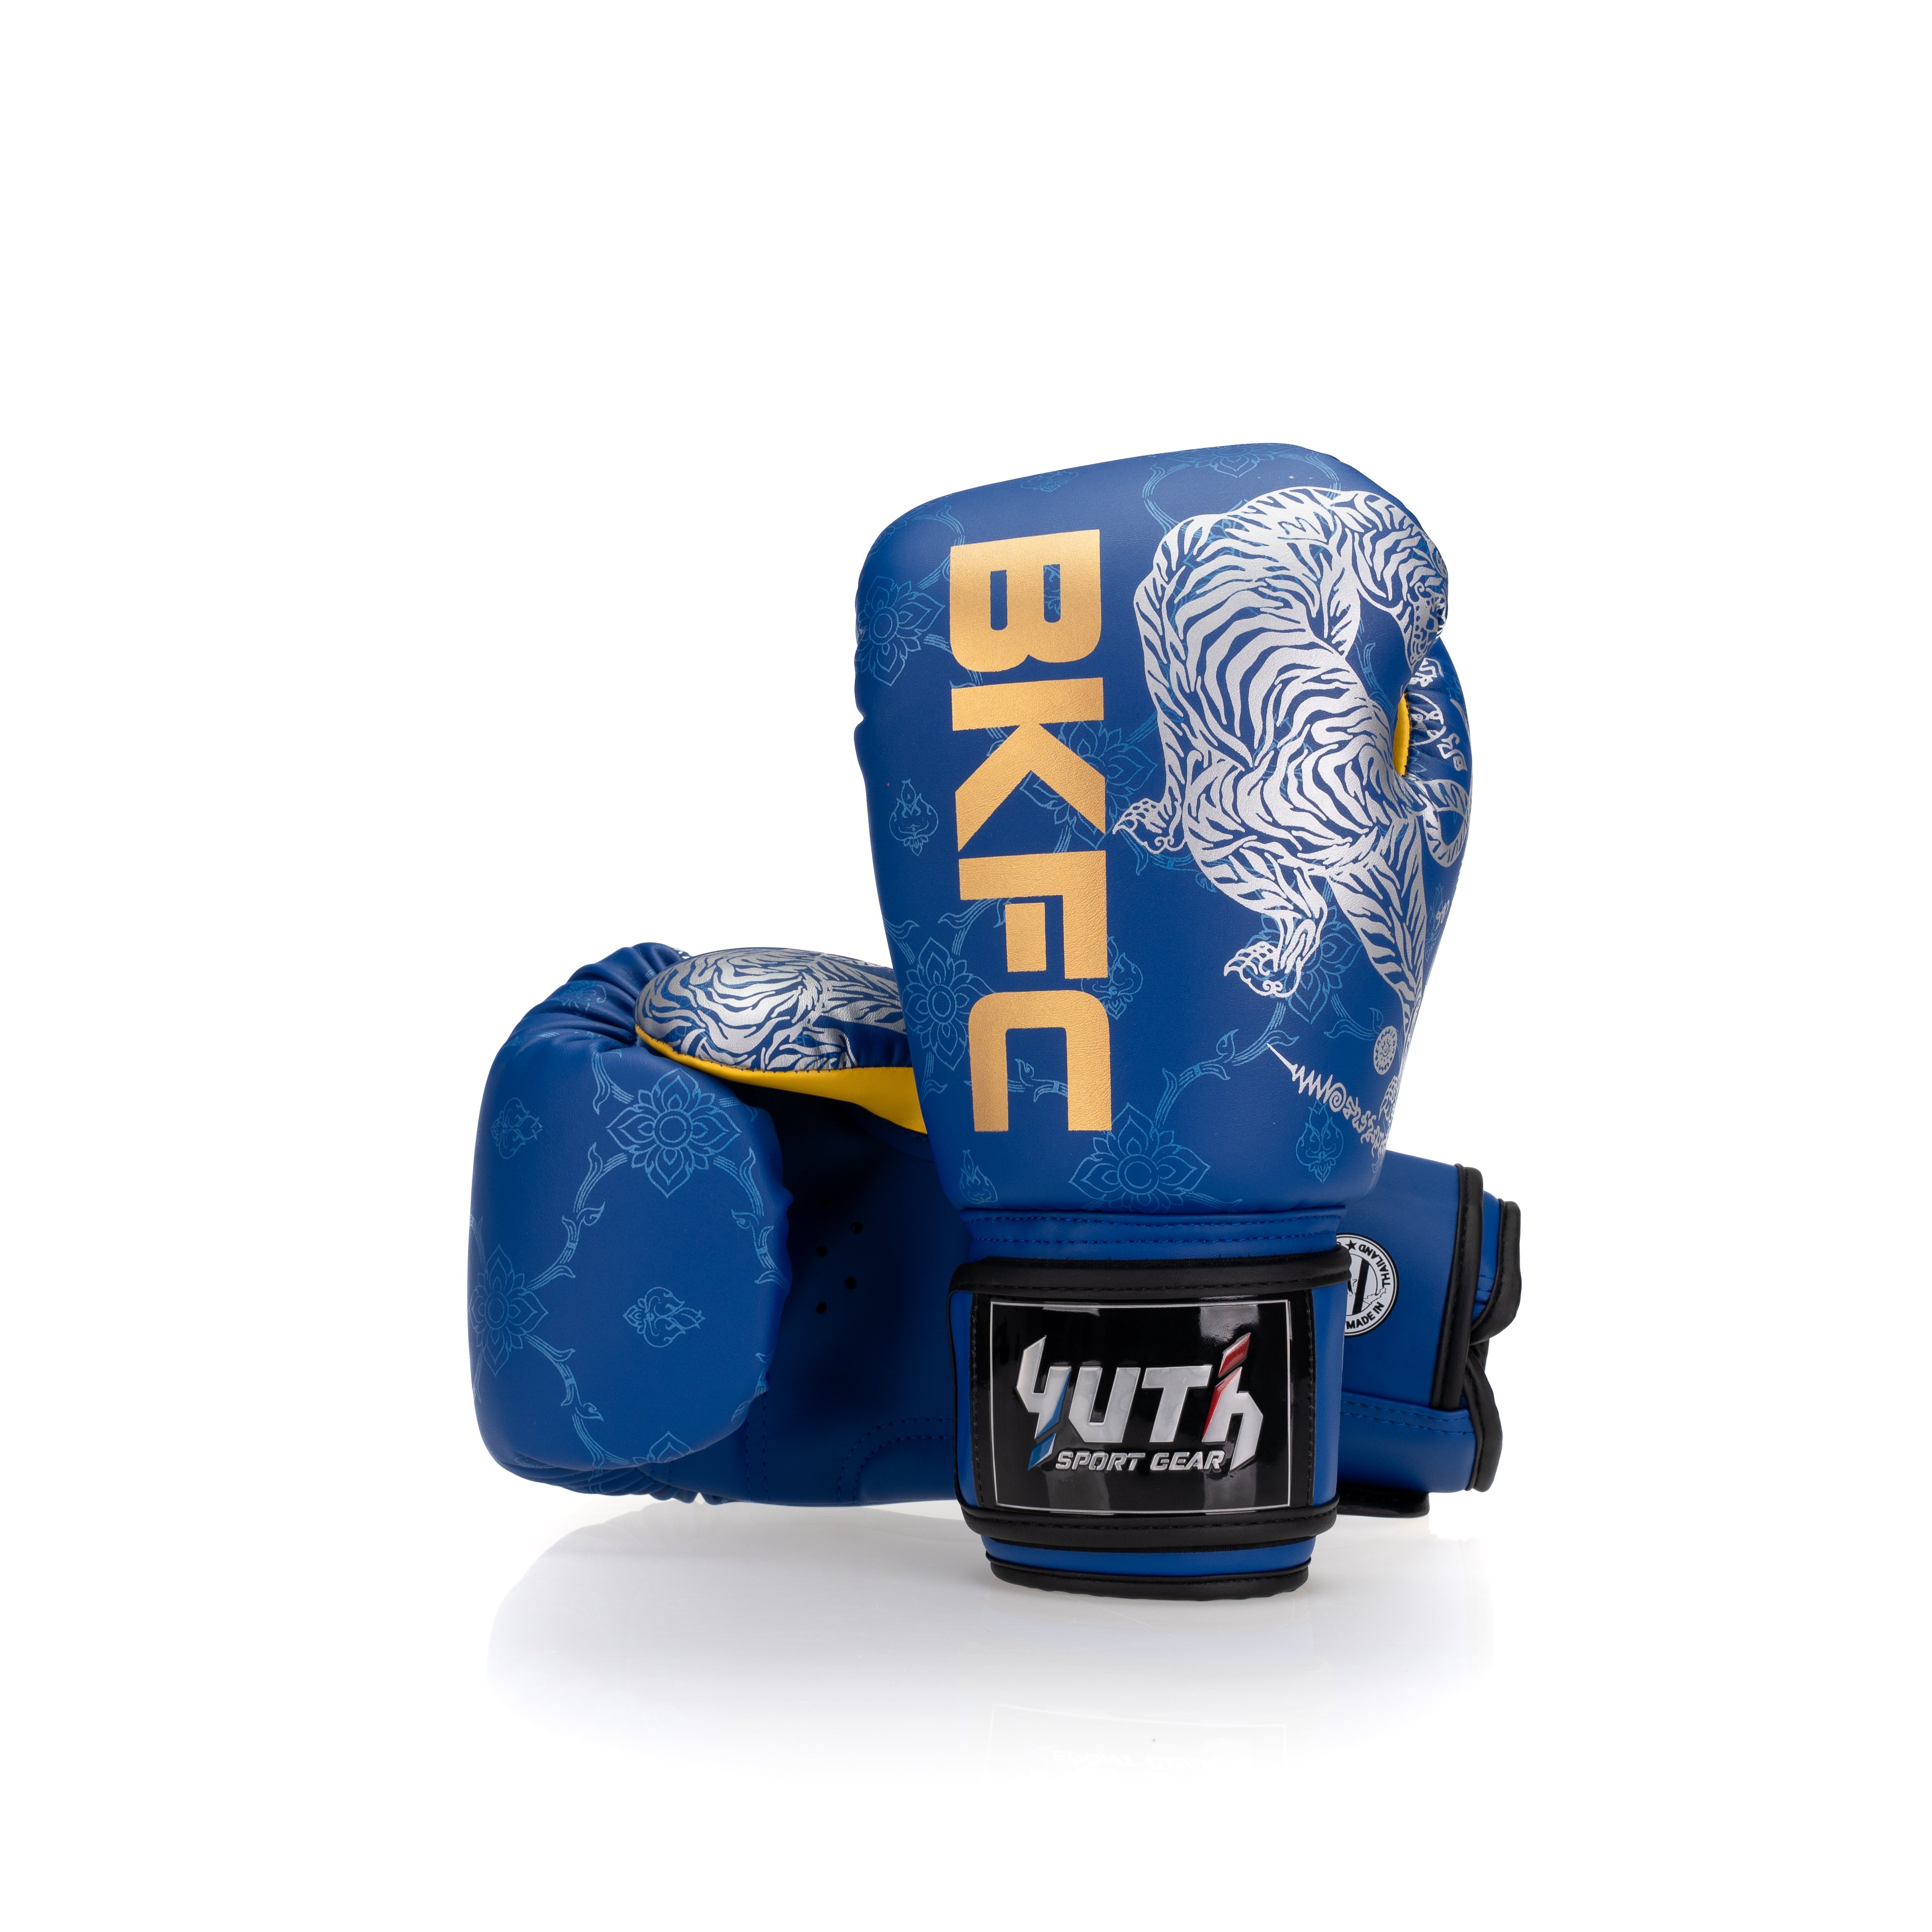 Yuth X BKFC Boxing Gloves - Fight.ShopBoxing GlovesYuth X BKFCBlue8oz